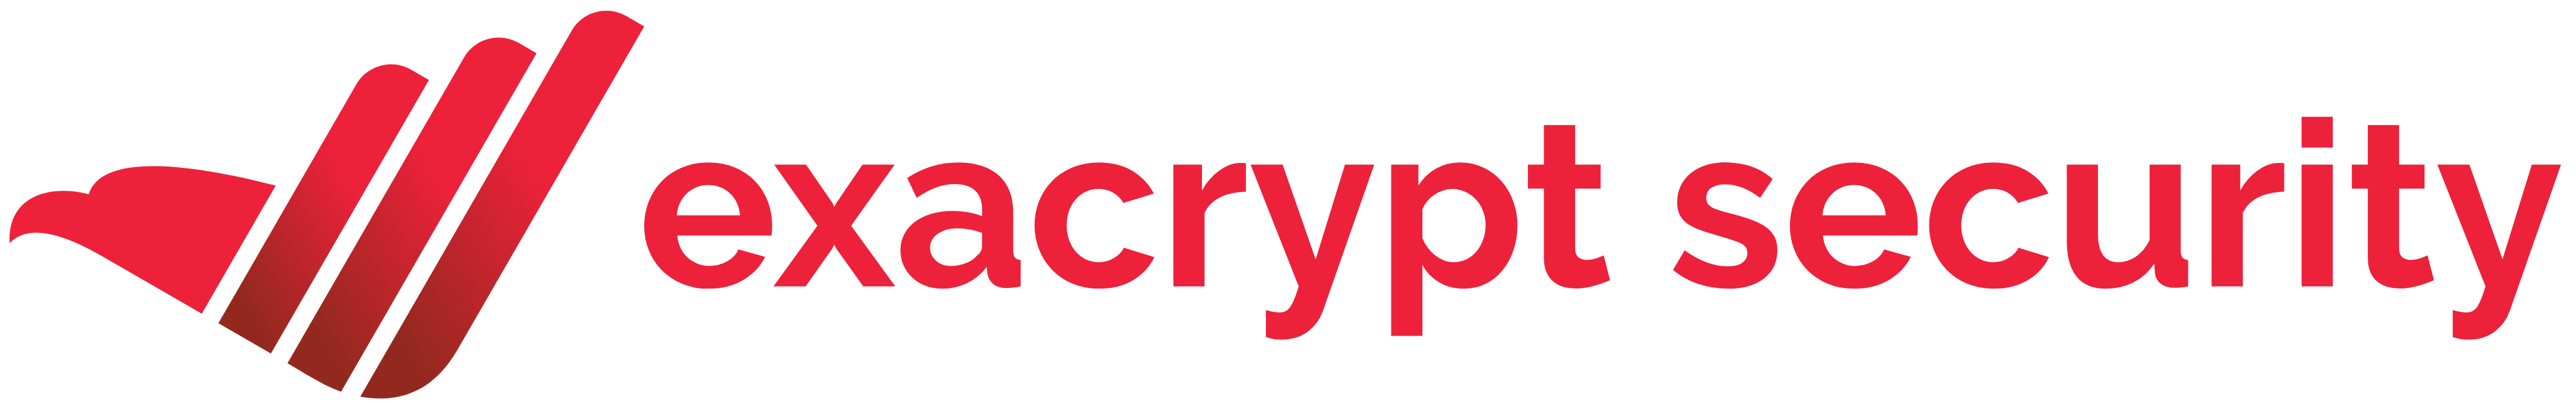 Exacrypt security Logo Image